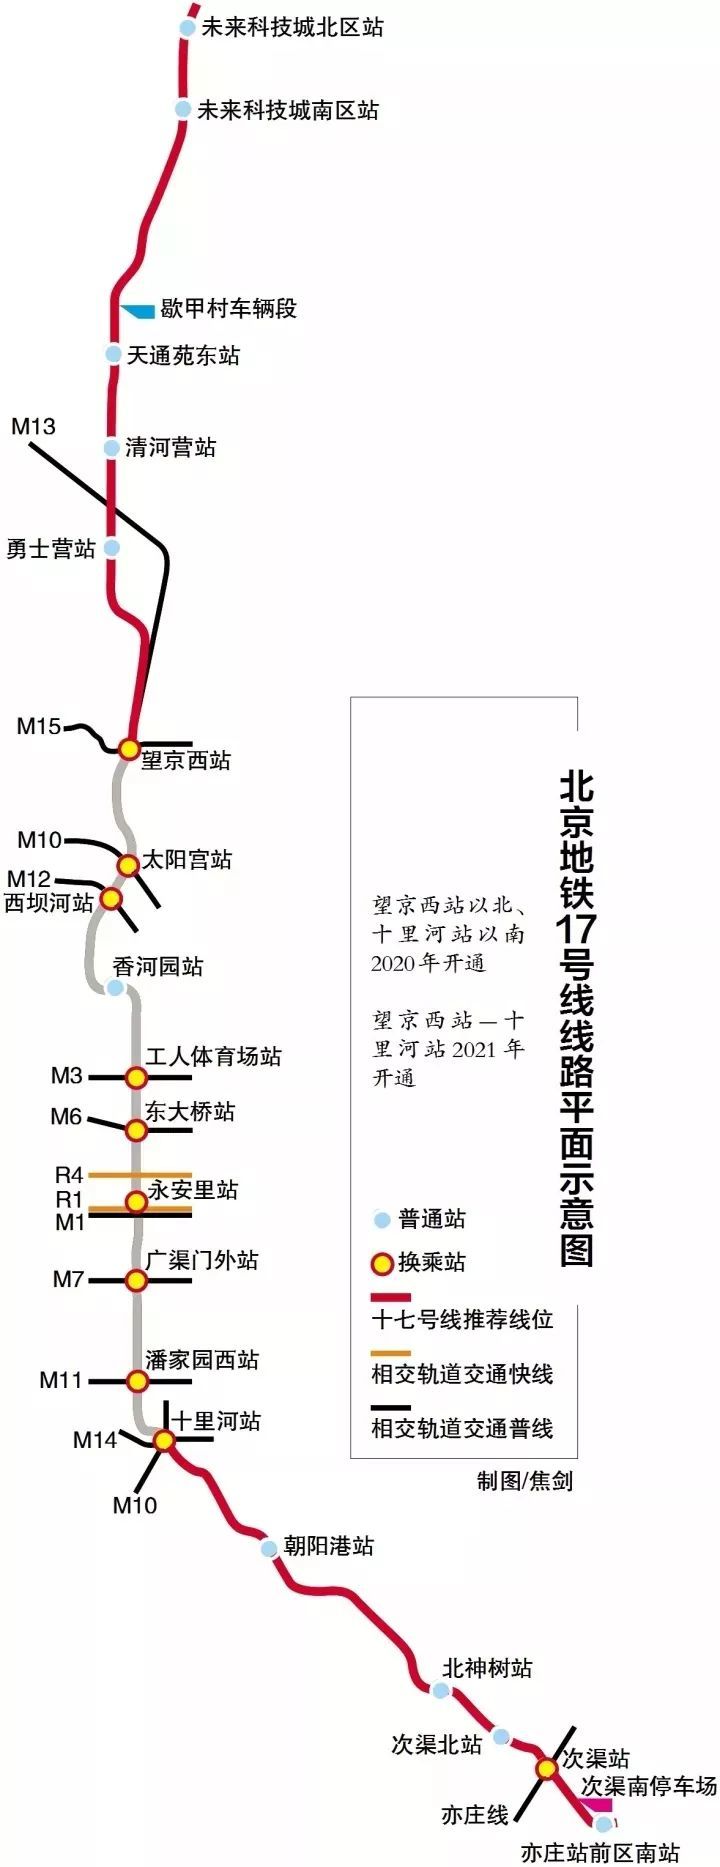 17号线建成后将缓解地铁5号线压力,同时也能对地铁13号线和10号线起到